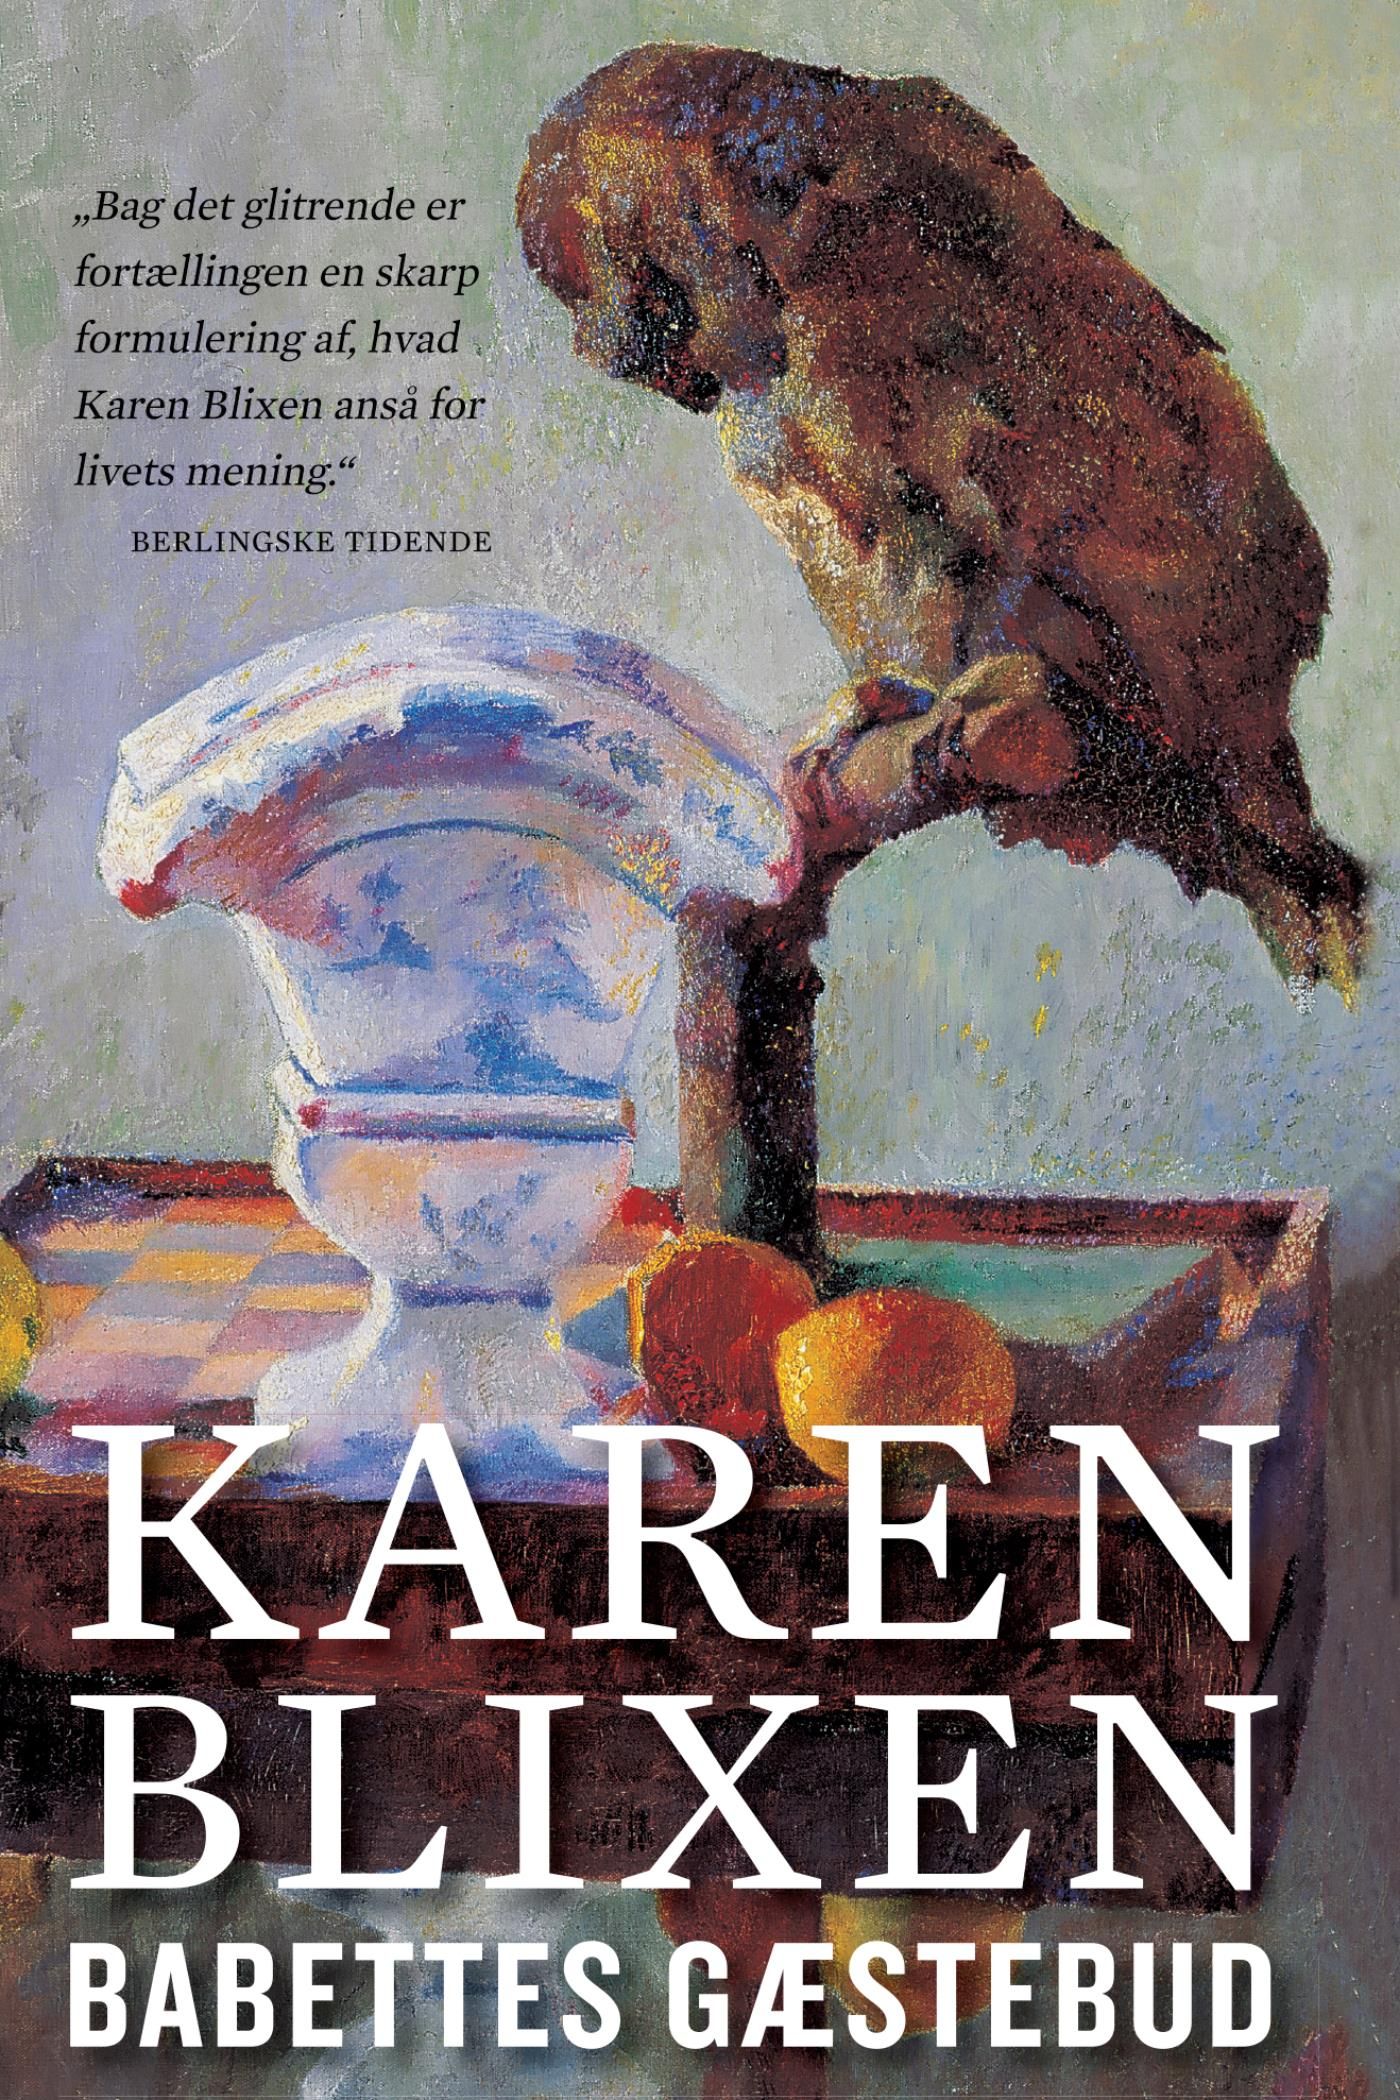 Babettes gæstebud, e-bok av Karen Blixen